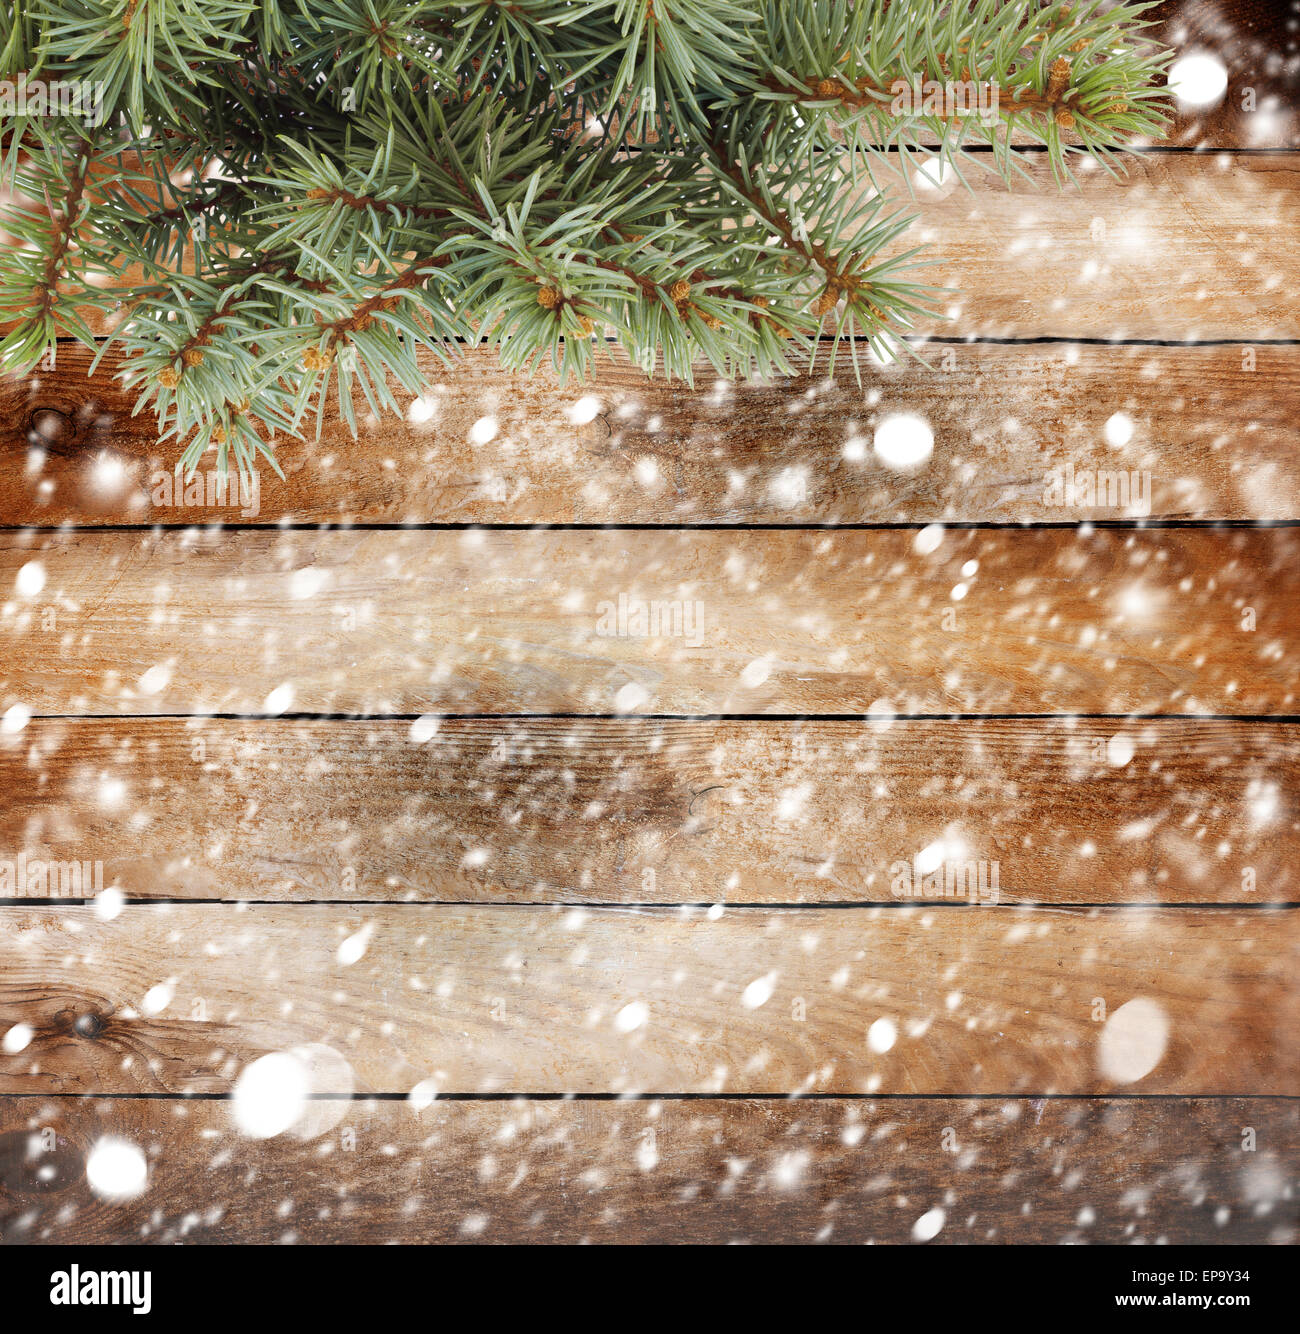 La direction générale de l'arbre de Noël sur le fond en bois couverte de neige Banque D'Images